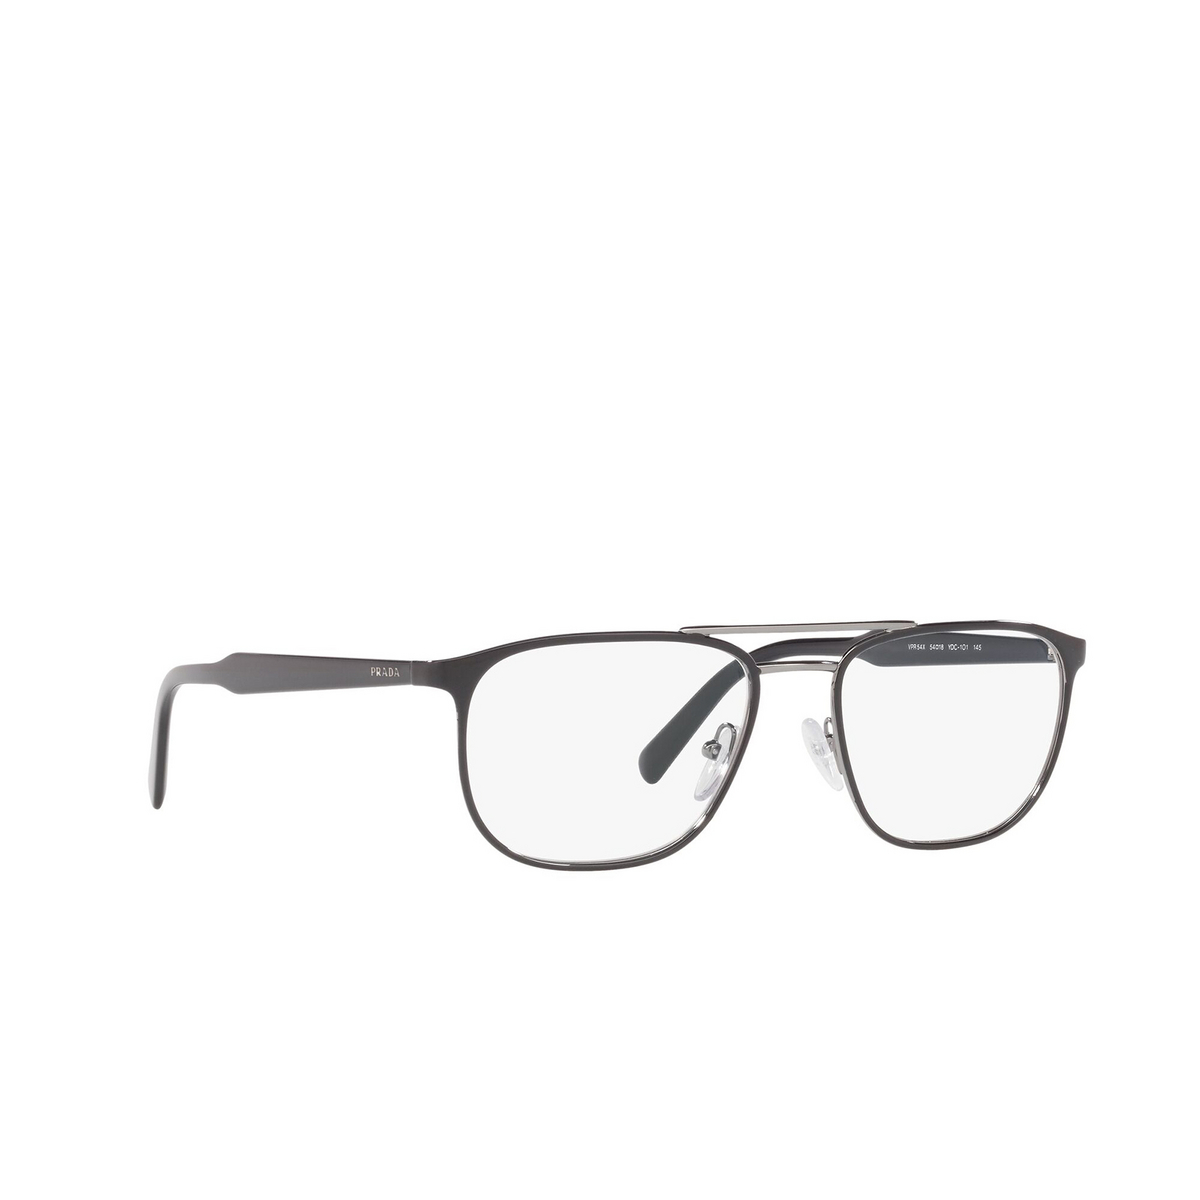 Prada CONCEPTUAL Eyeglasses YDC1O1 Top Black on Gunmetal - three-quarters view